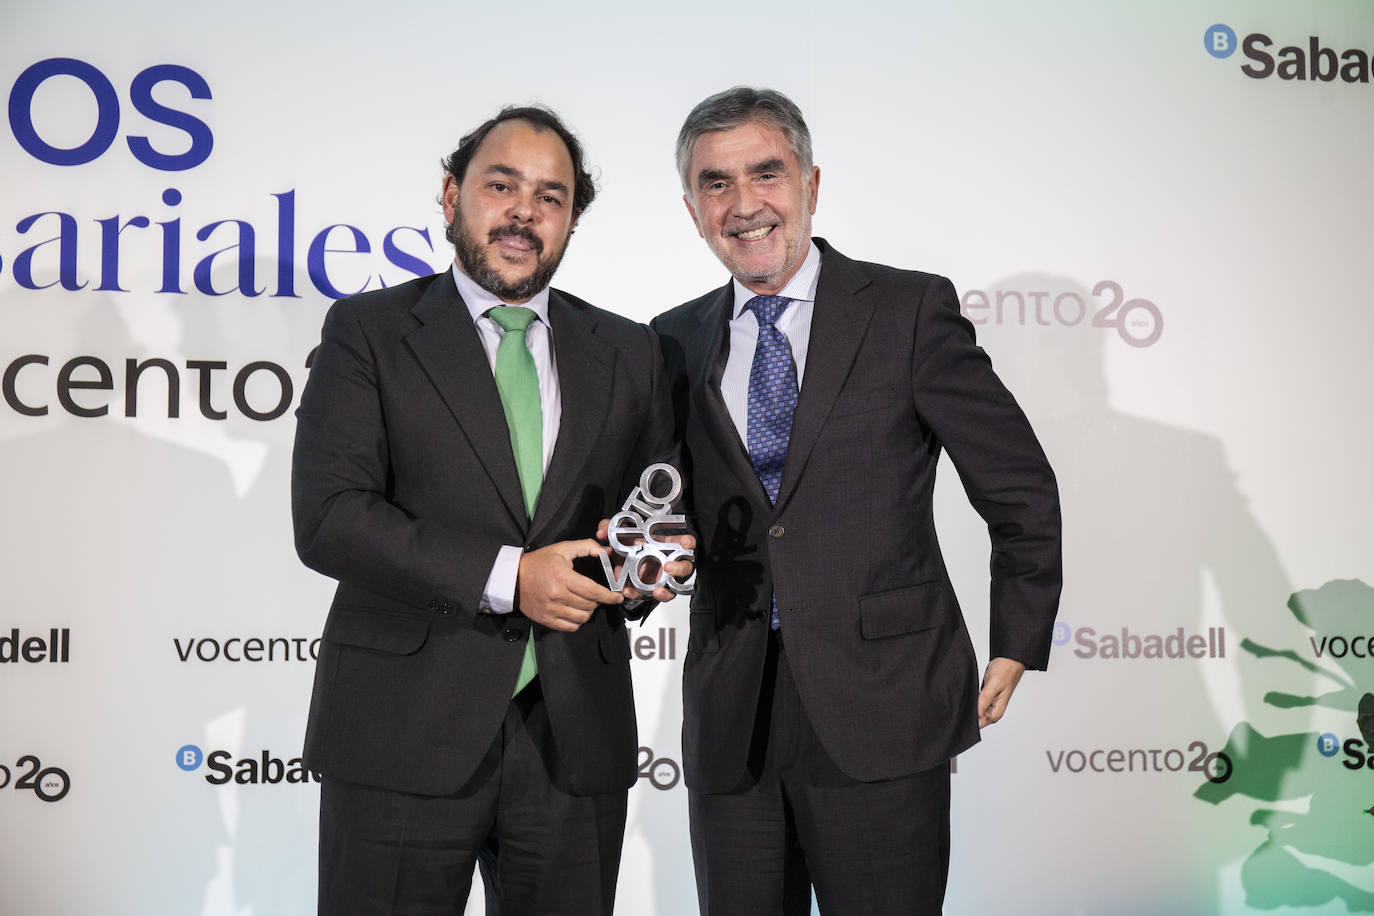 Iñaki Arechabaleta, adjunto al Consejero Delegado de Vocento, entrega el premio al Patrocinio a Telefónica 